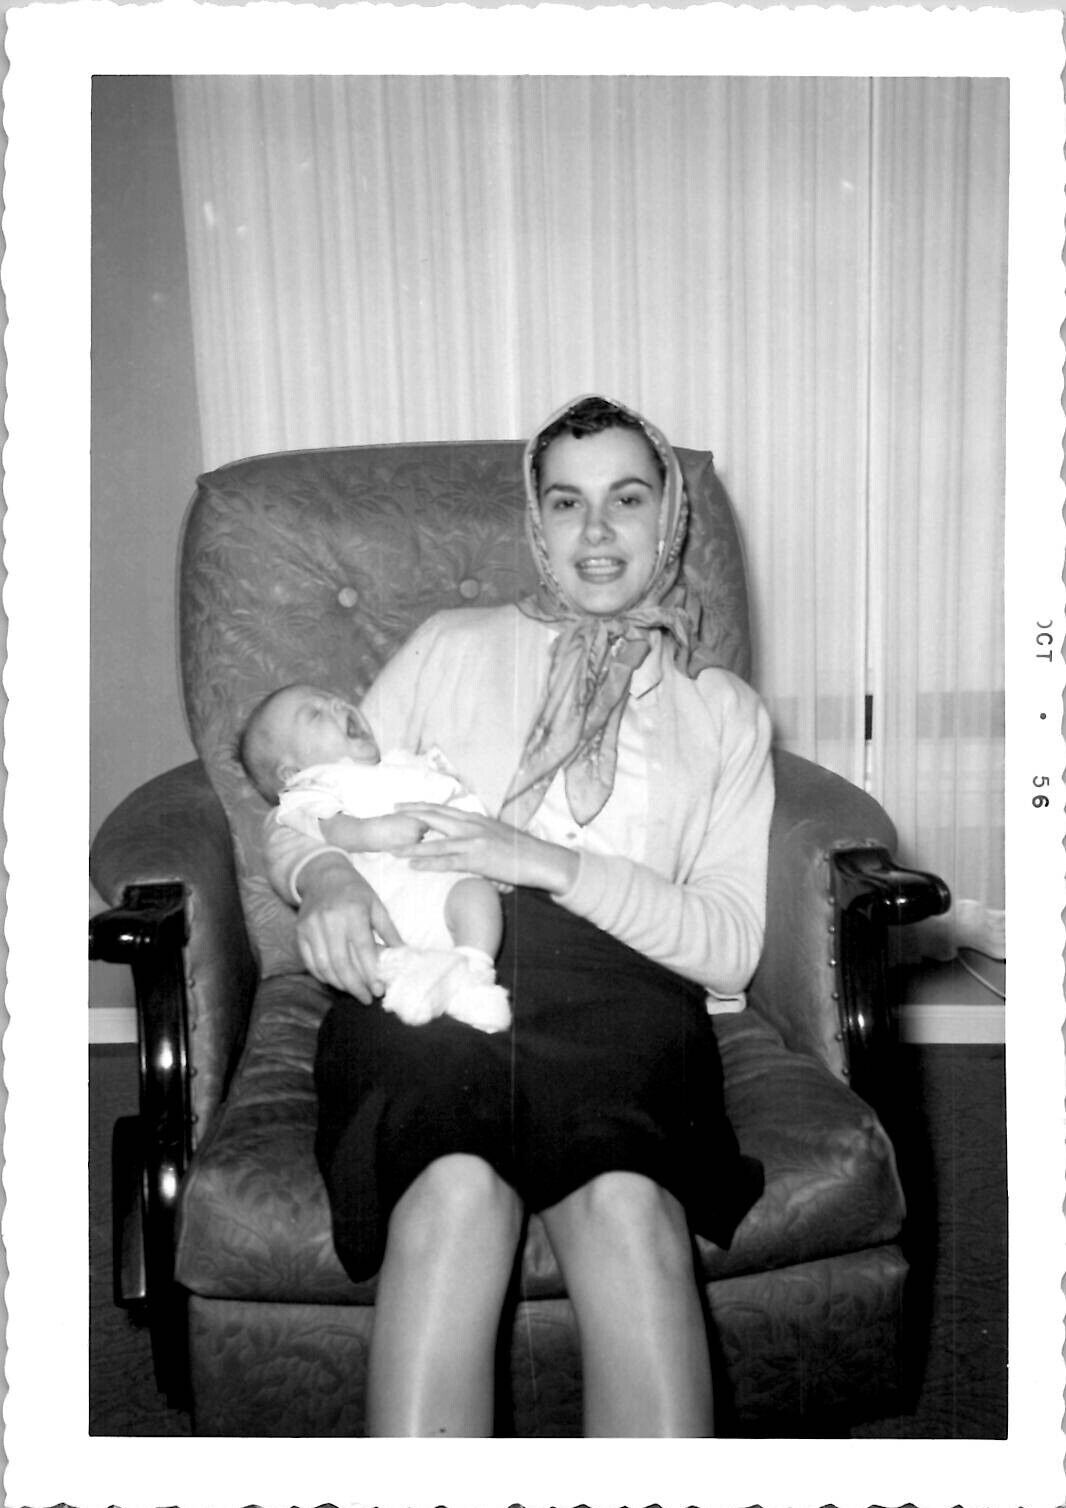 Auntie Holding Recently Baptized Baby Catholic Religion 1950s Vintage Photograph